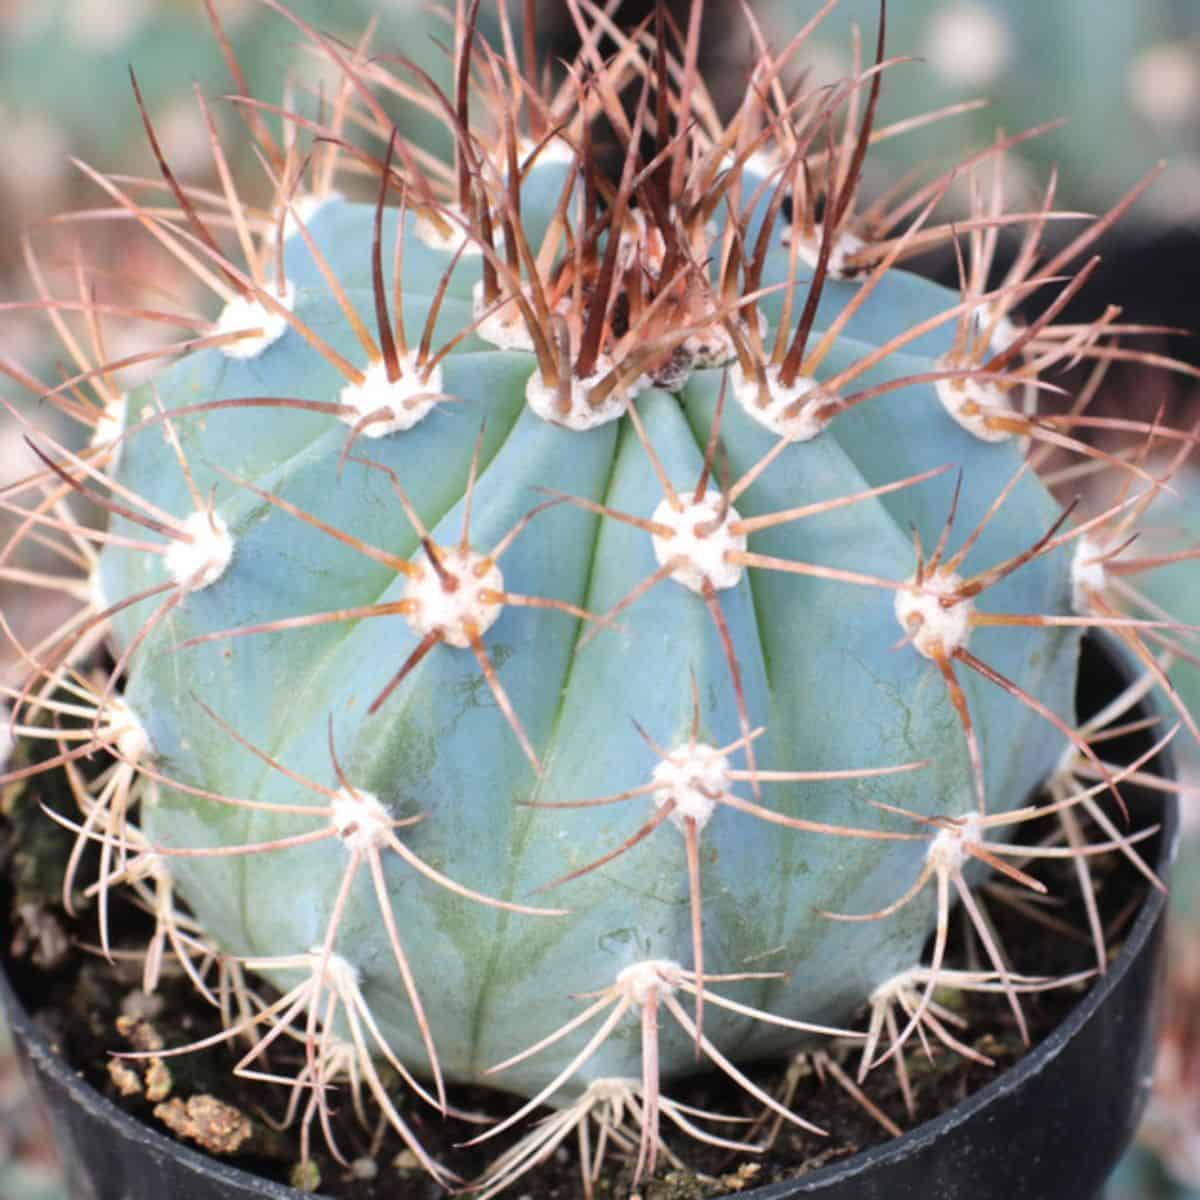 Melocactus azureus – Turk’s Cap Cactus in a pot.
